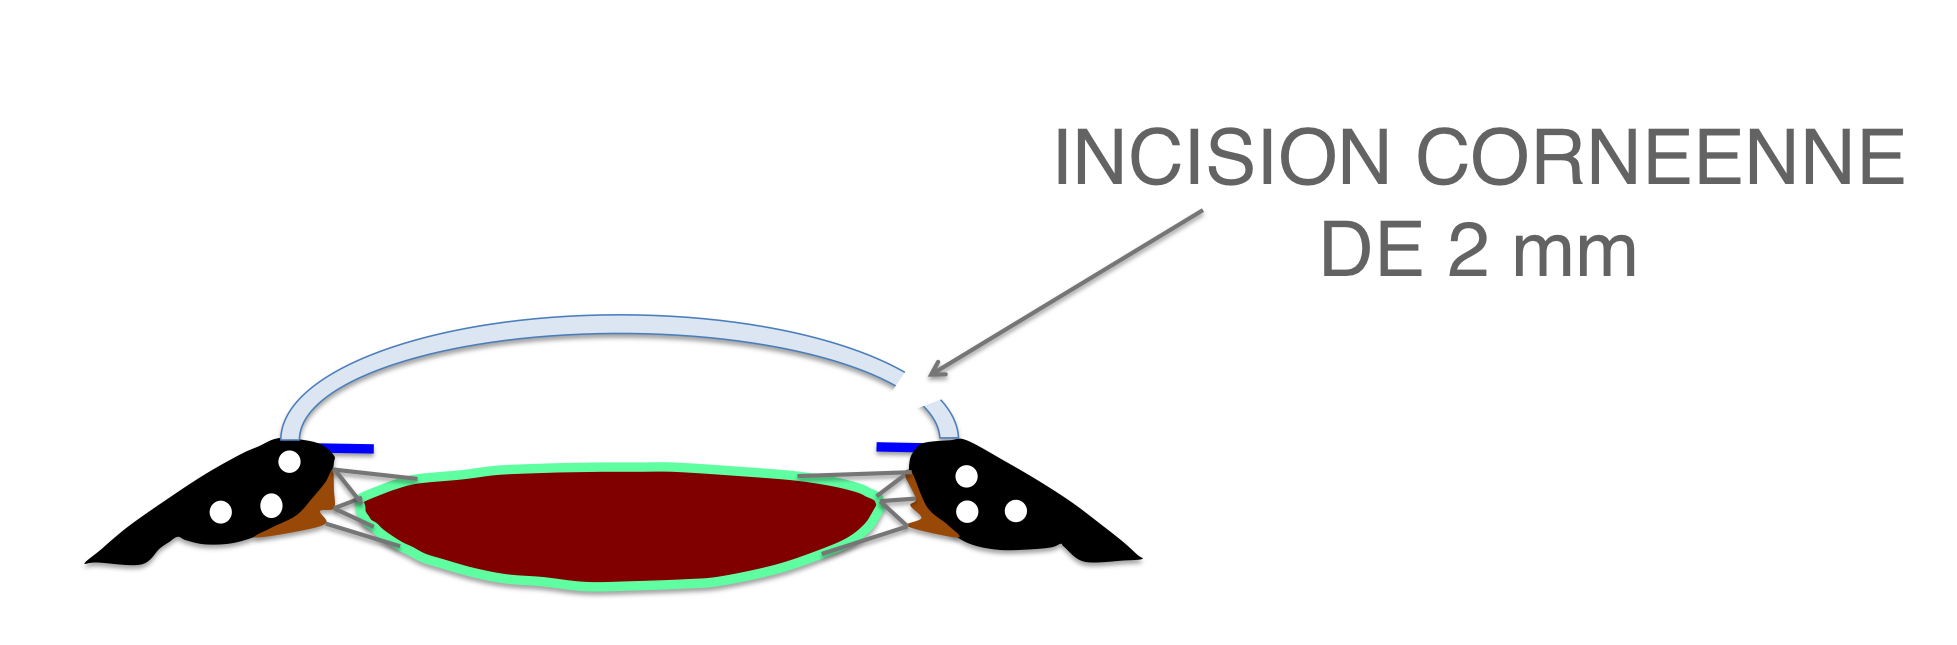 l'intervention de cataracte débute par la réalisation d'une petite incision au niveau de la cornée